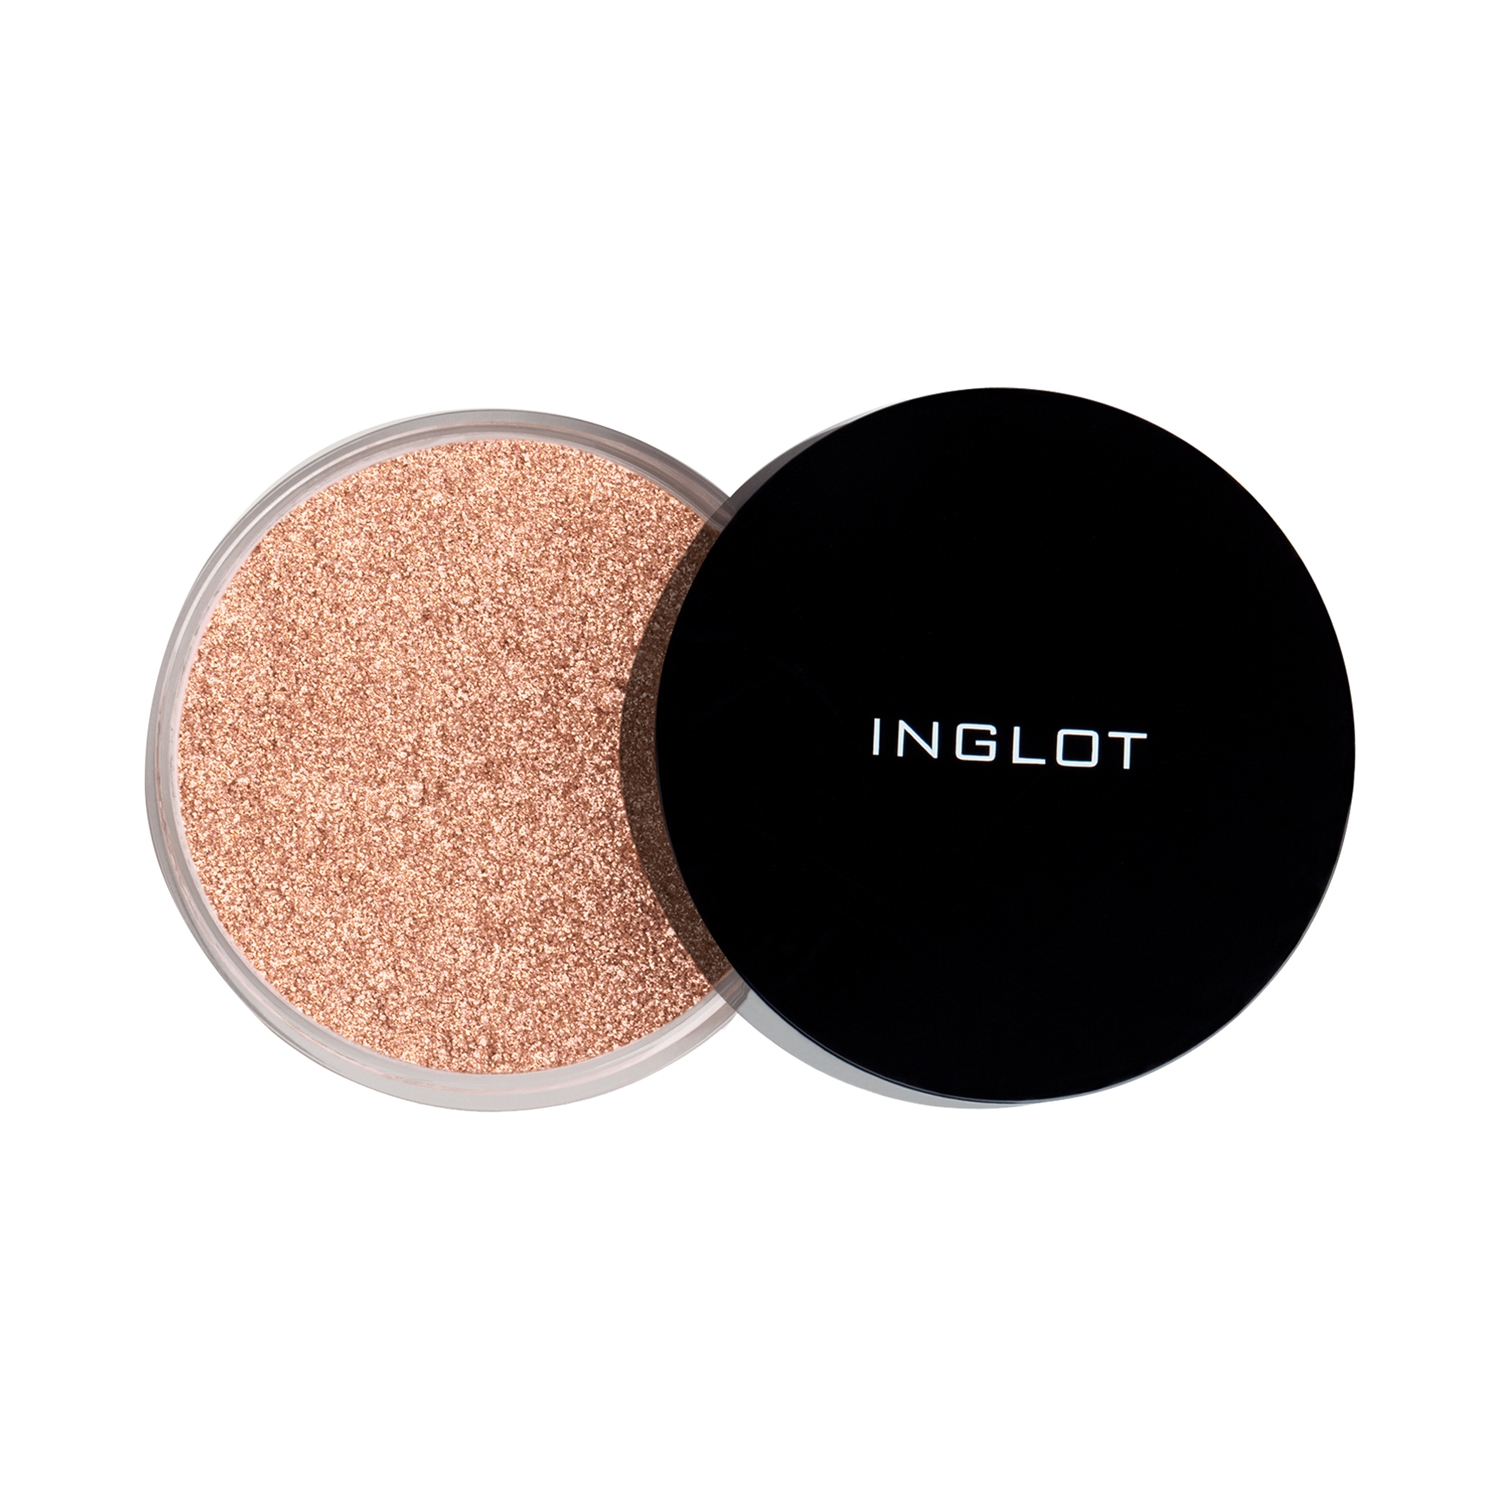 INGLOT | INGLOT Sparkling Dust Feb Highlighter - 07 (2.5g)